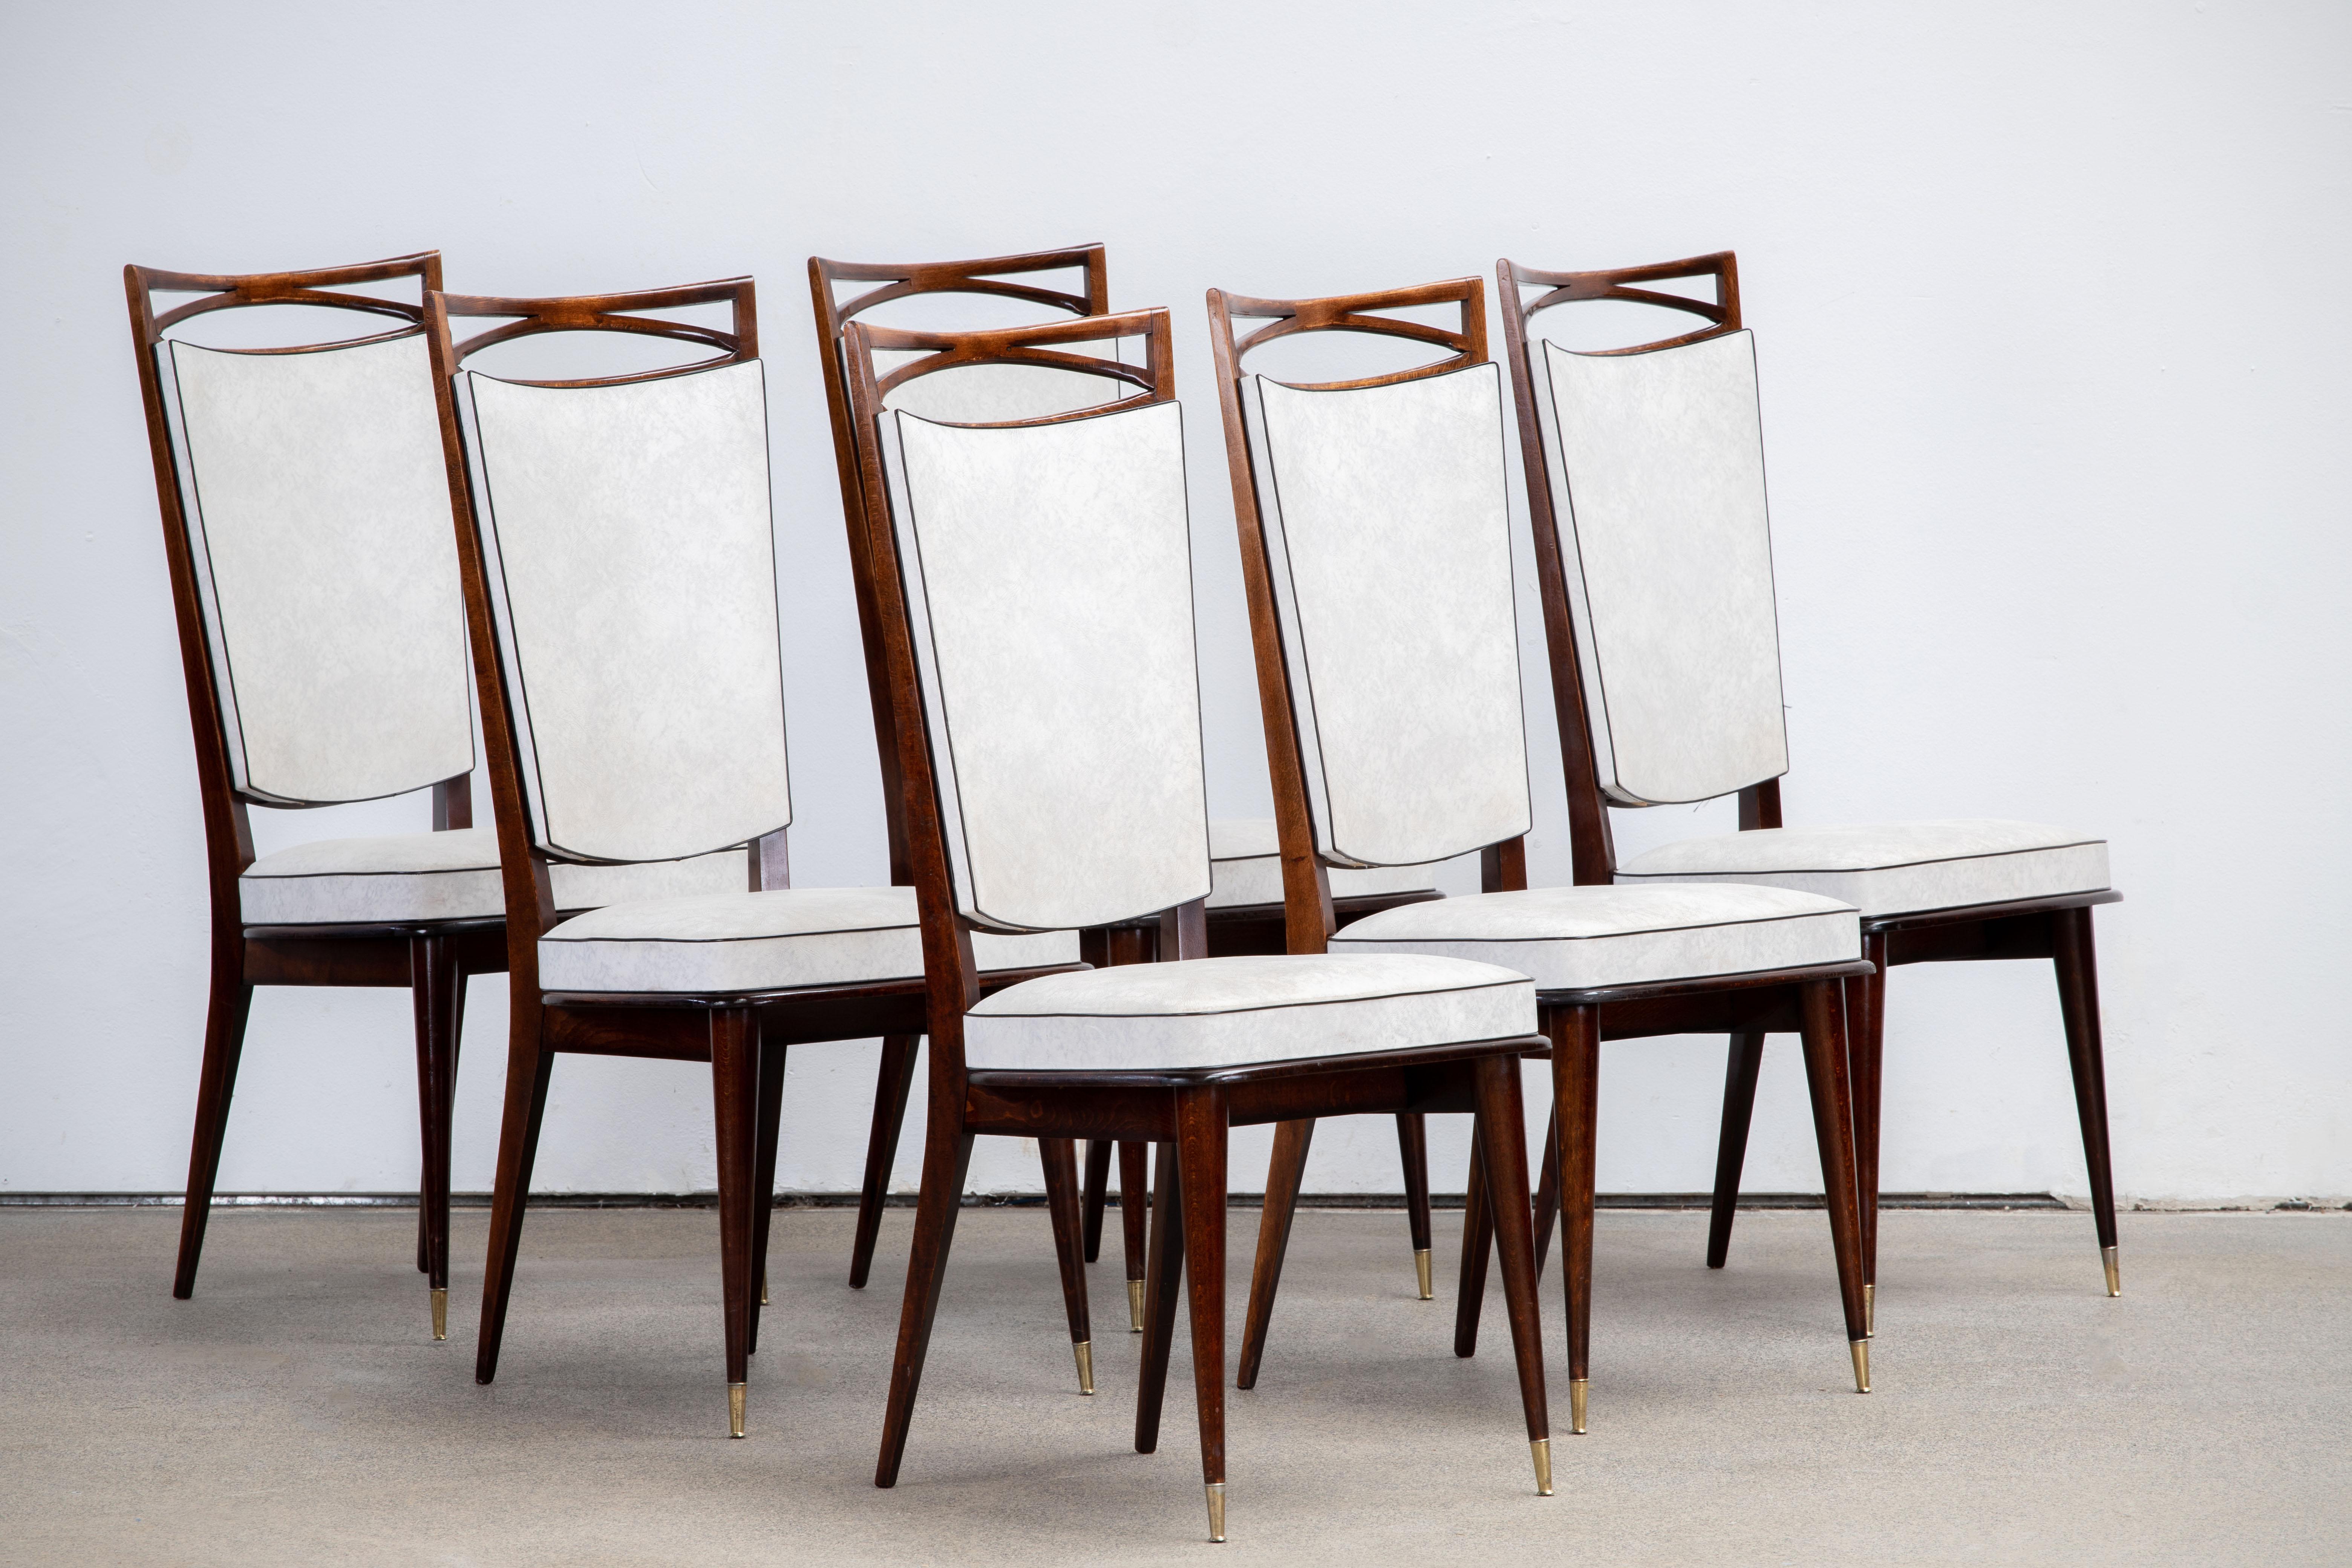 Set di sei sedie con schienale alto e imbottito, rivestite in vynil bianco, che presentano elementi di design tradizionale francese con una finitura in rovere profondo.

Nello stile di René Prou, Albert Guenot, Pomone, André Arbus, Baptistin